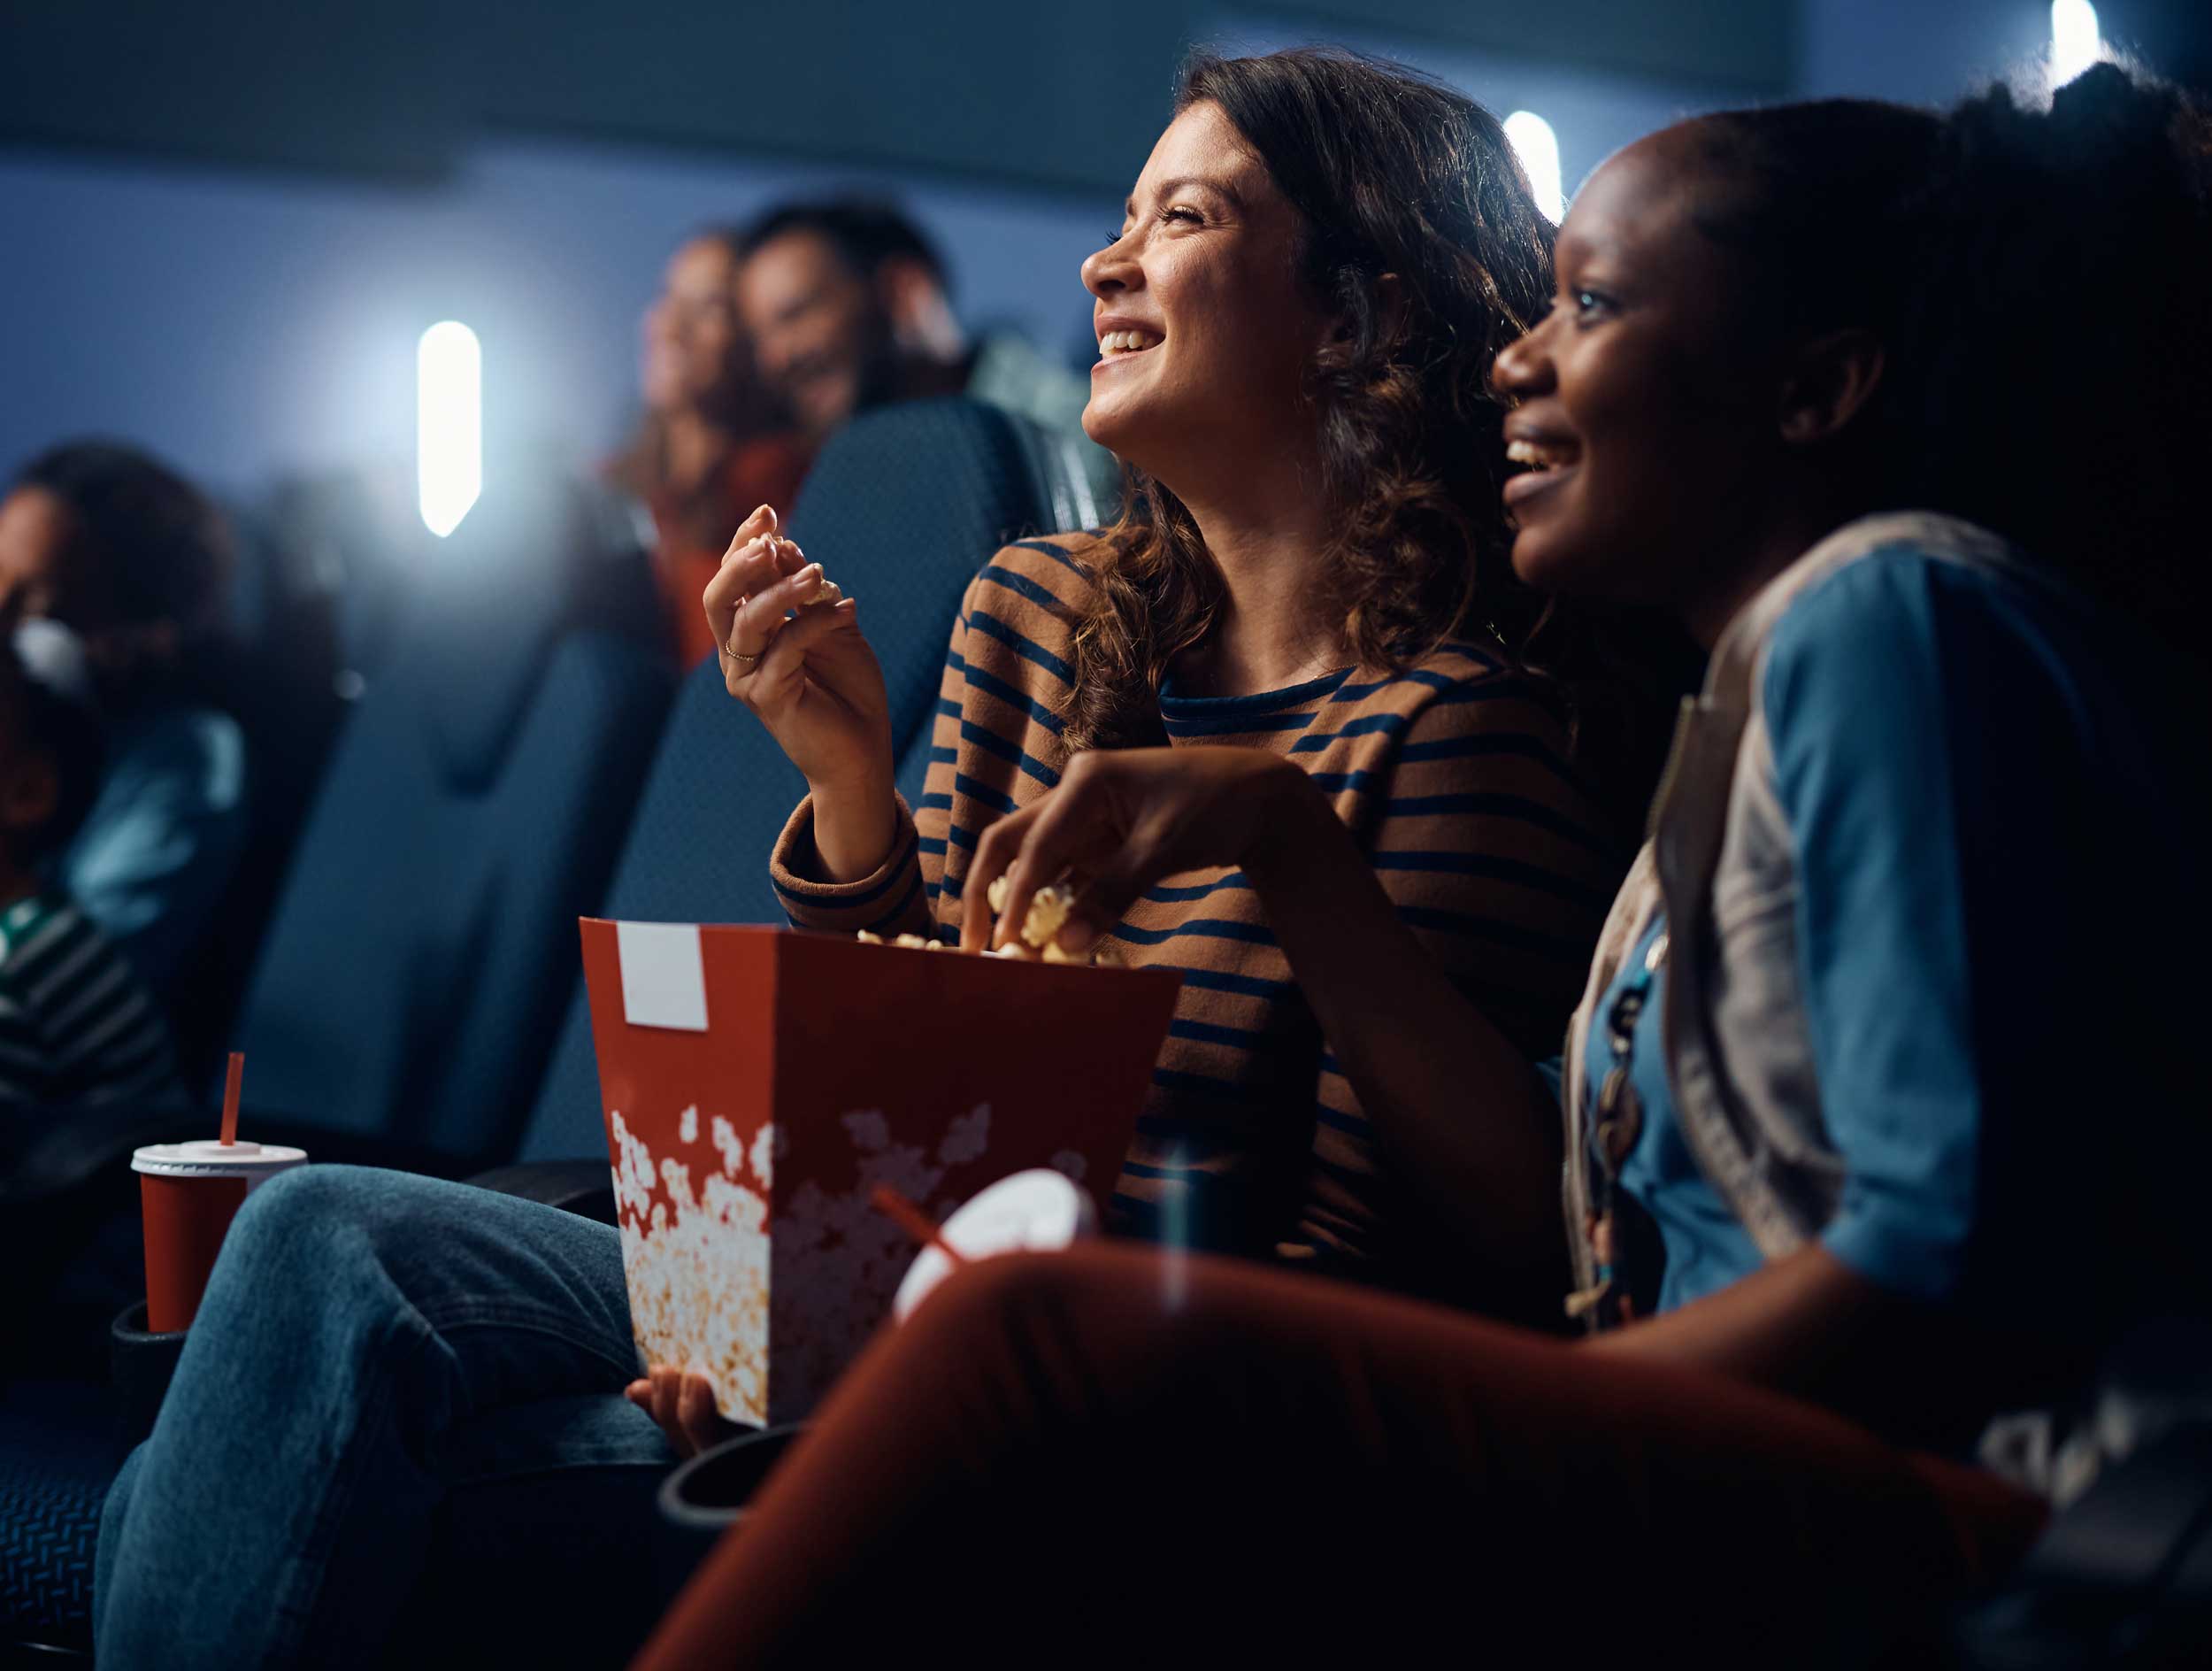 Kalorien-Schock im Kino: Achtung vor Popcorn, Nachos & Co! - gofeminin